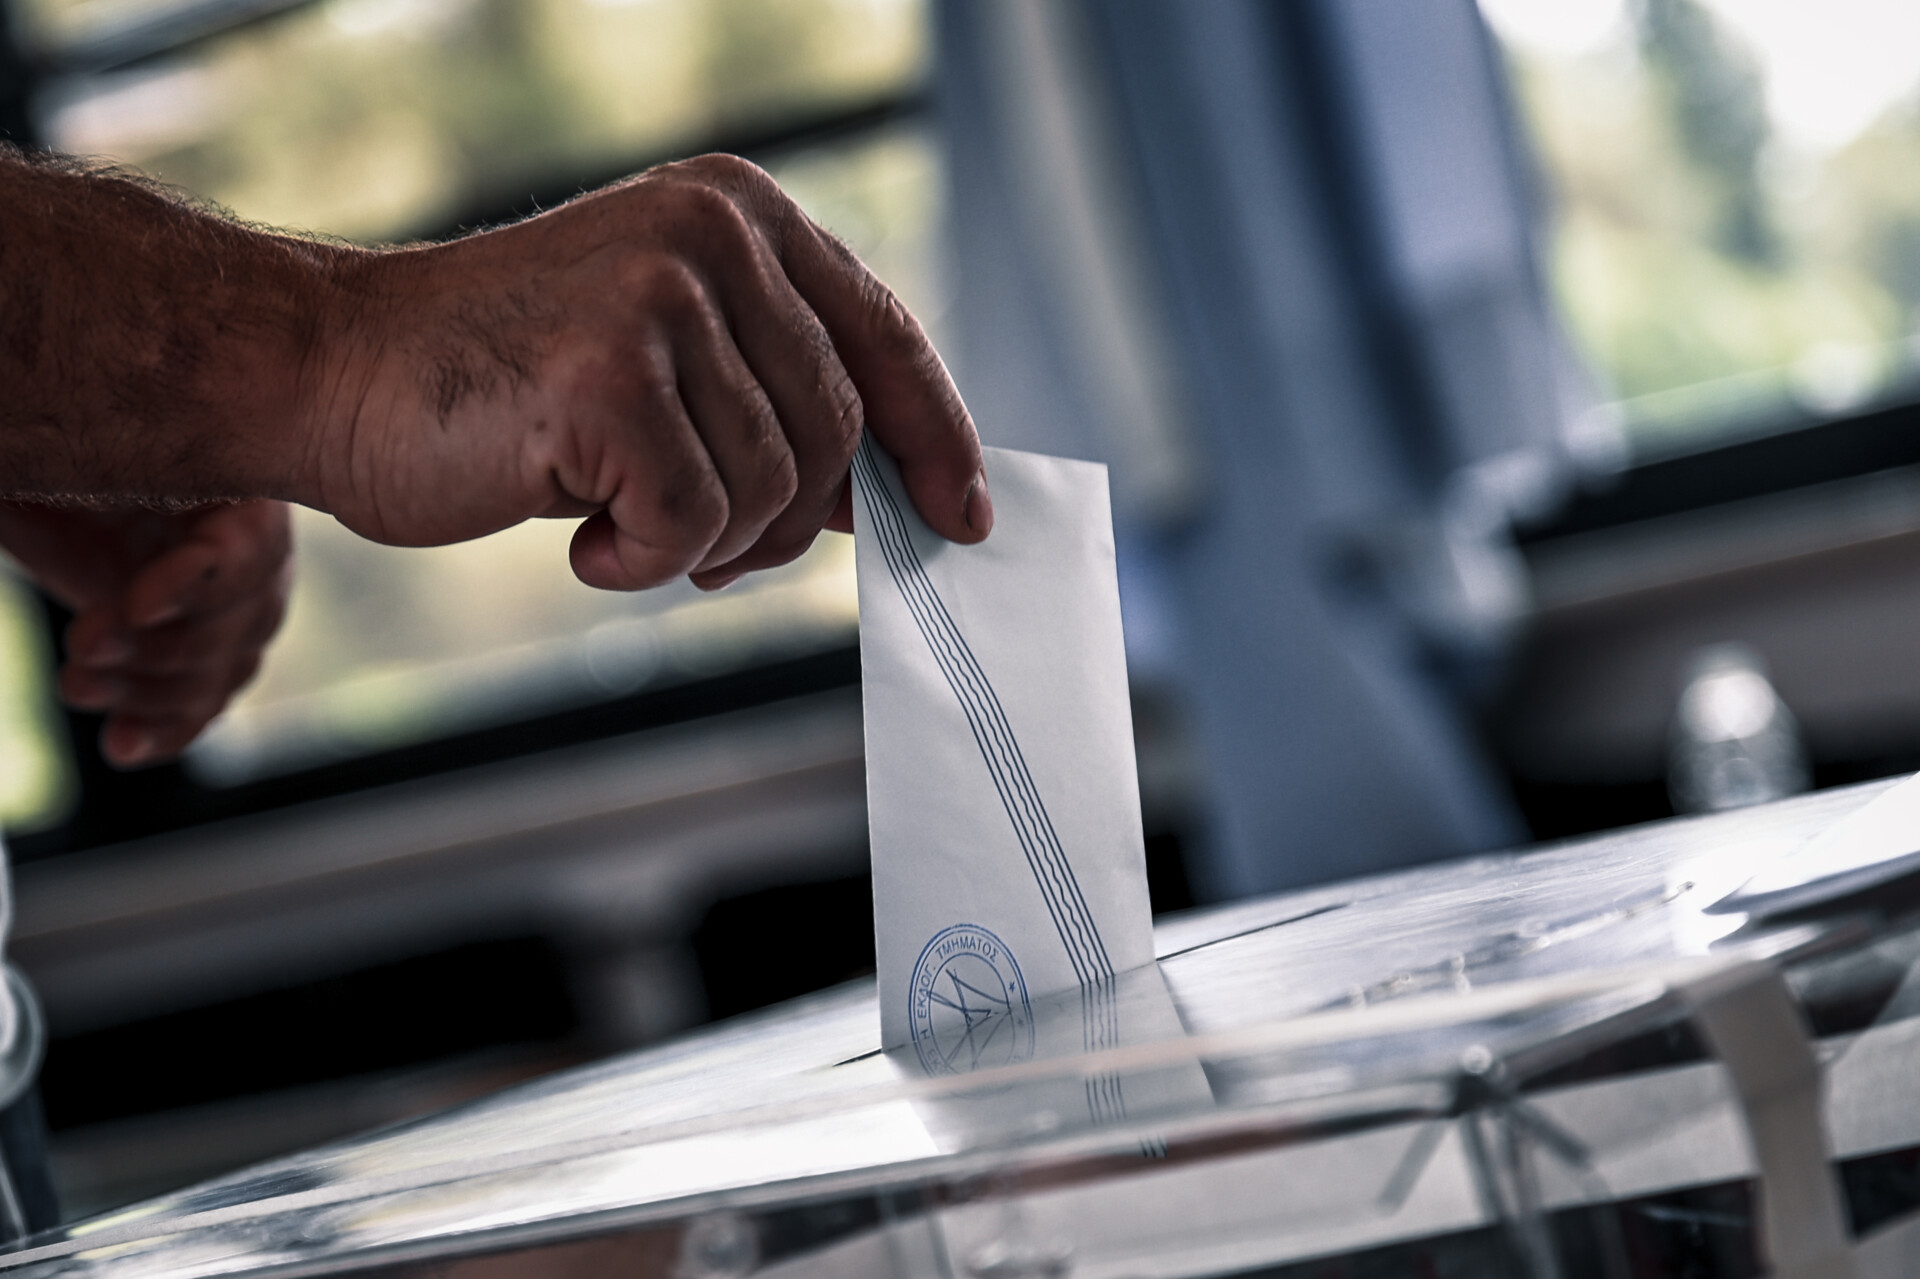 Στιγμιότυπο από την εκλογική διαδικασία © Eurokinissi